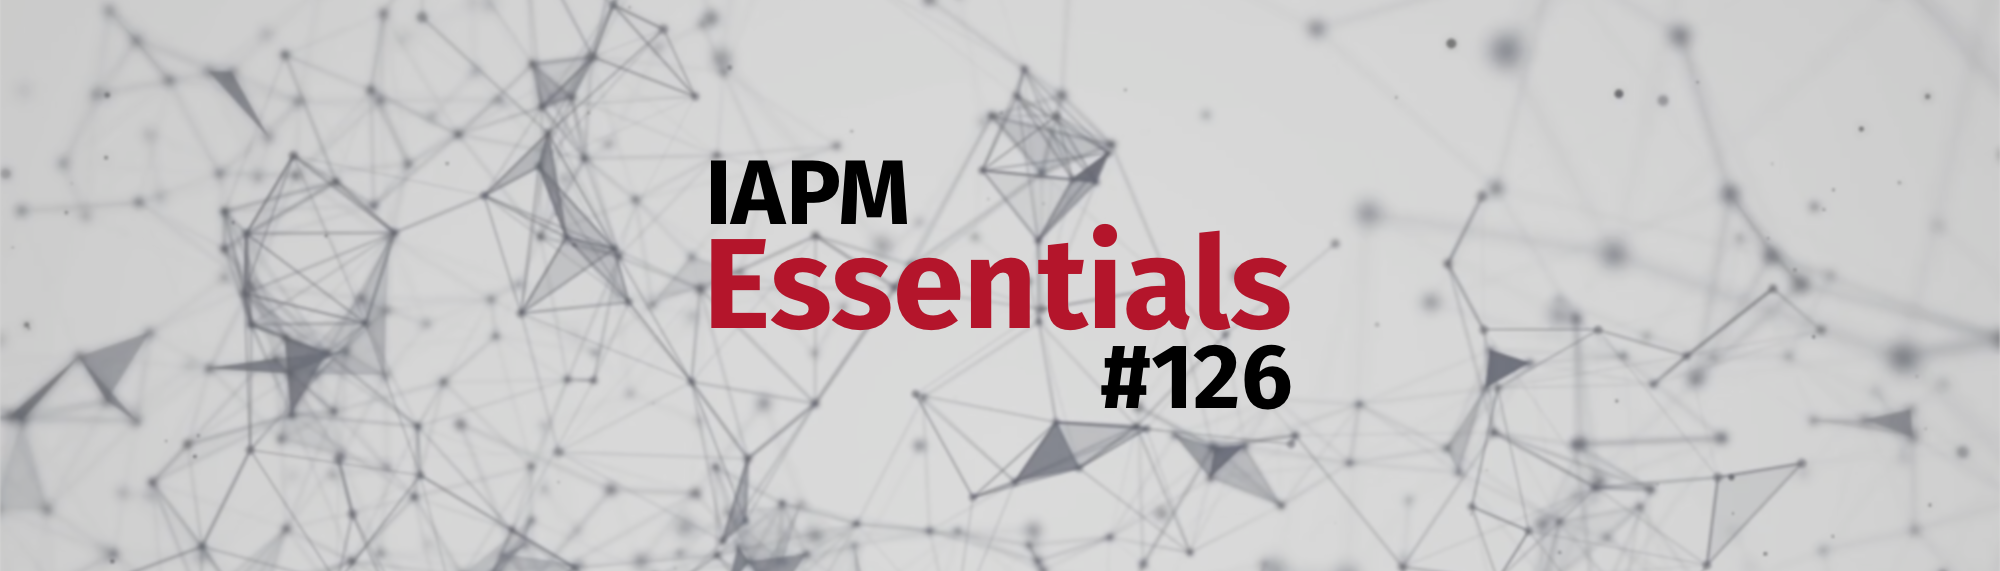 IAPM Essentials #126 - PM news | IAPM